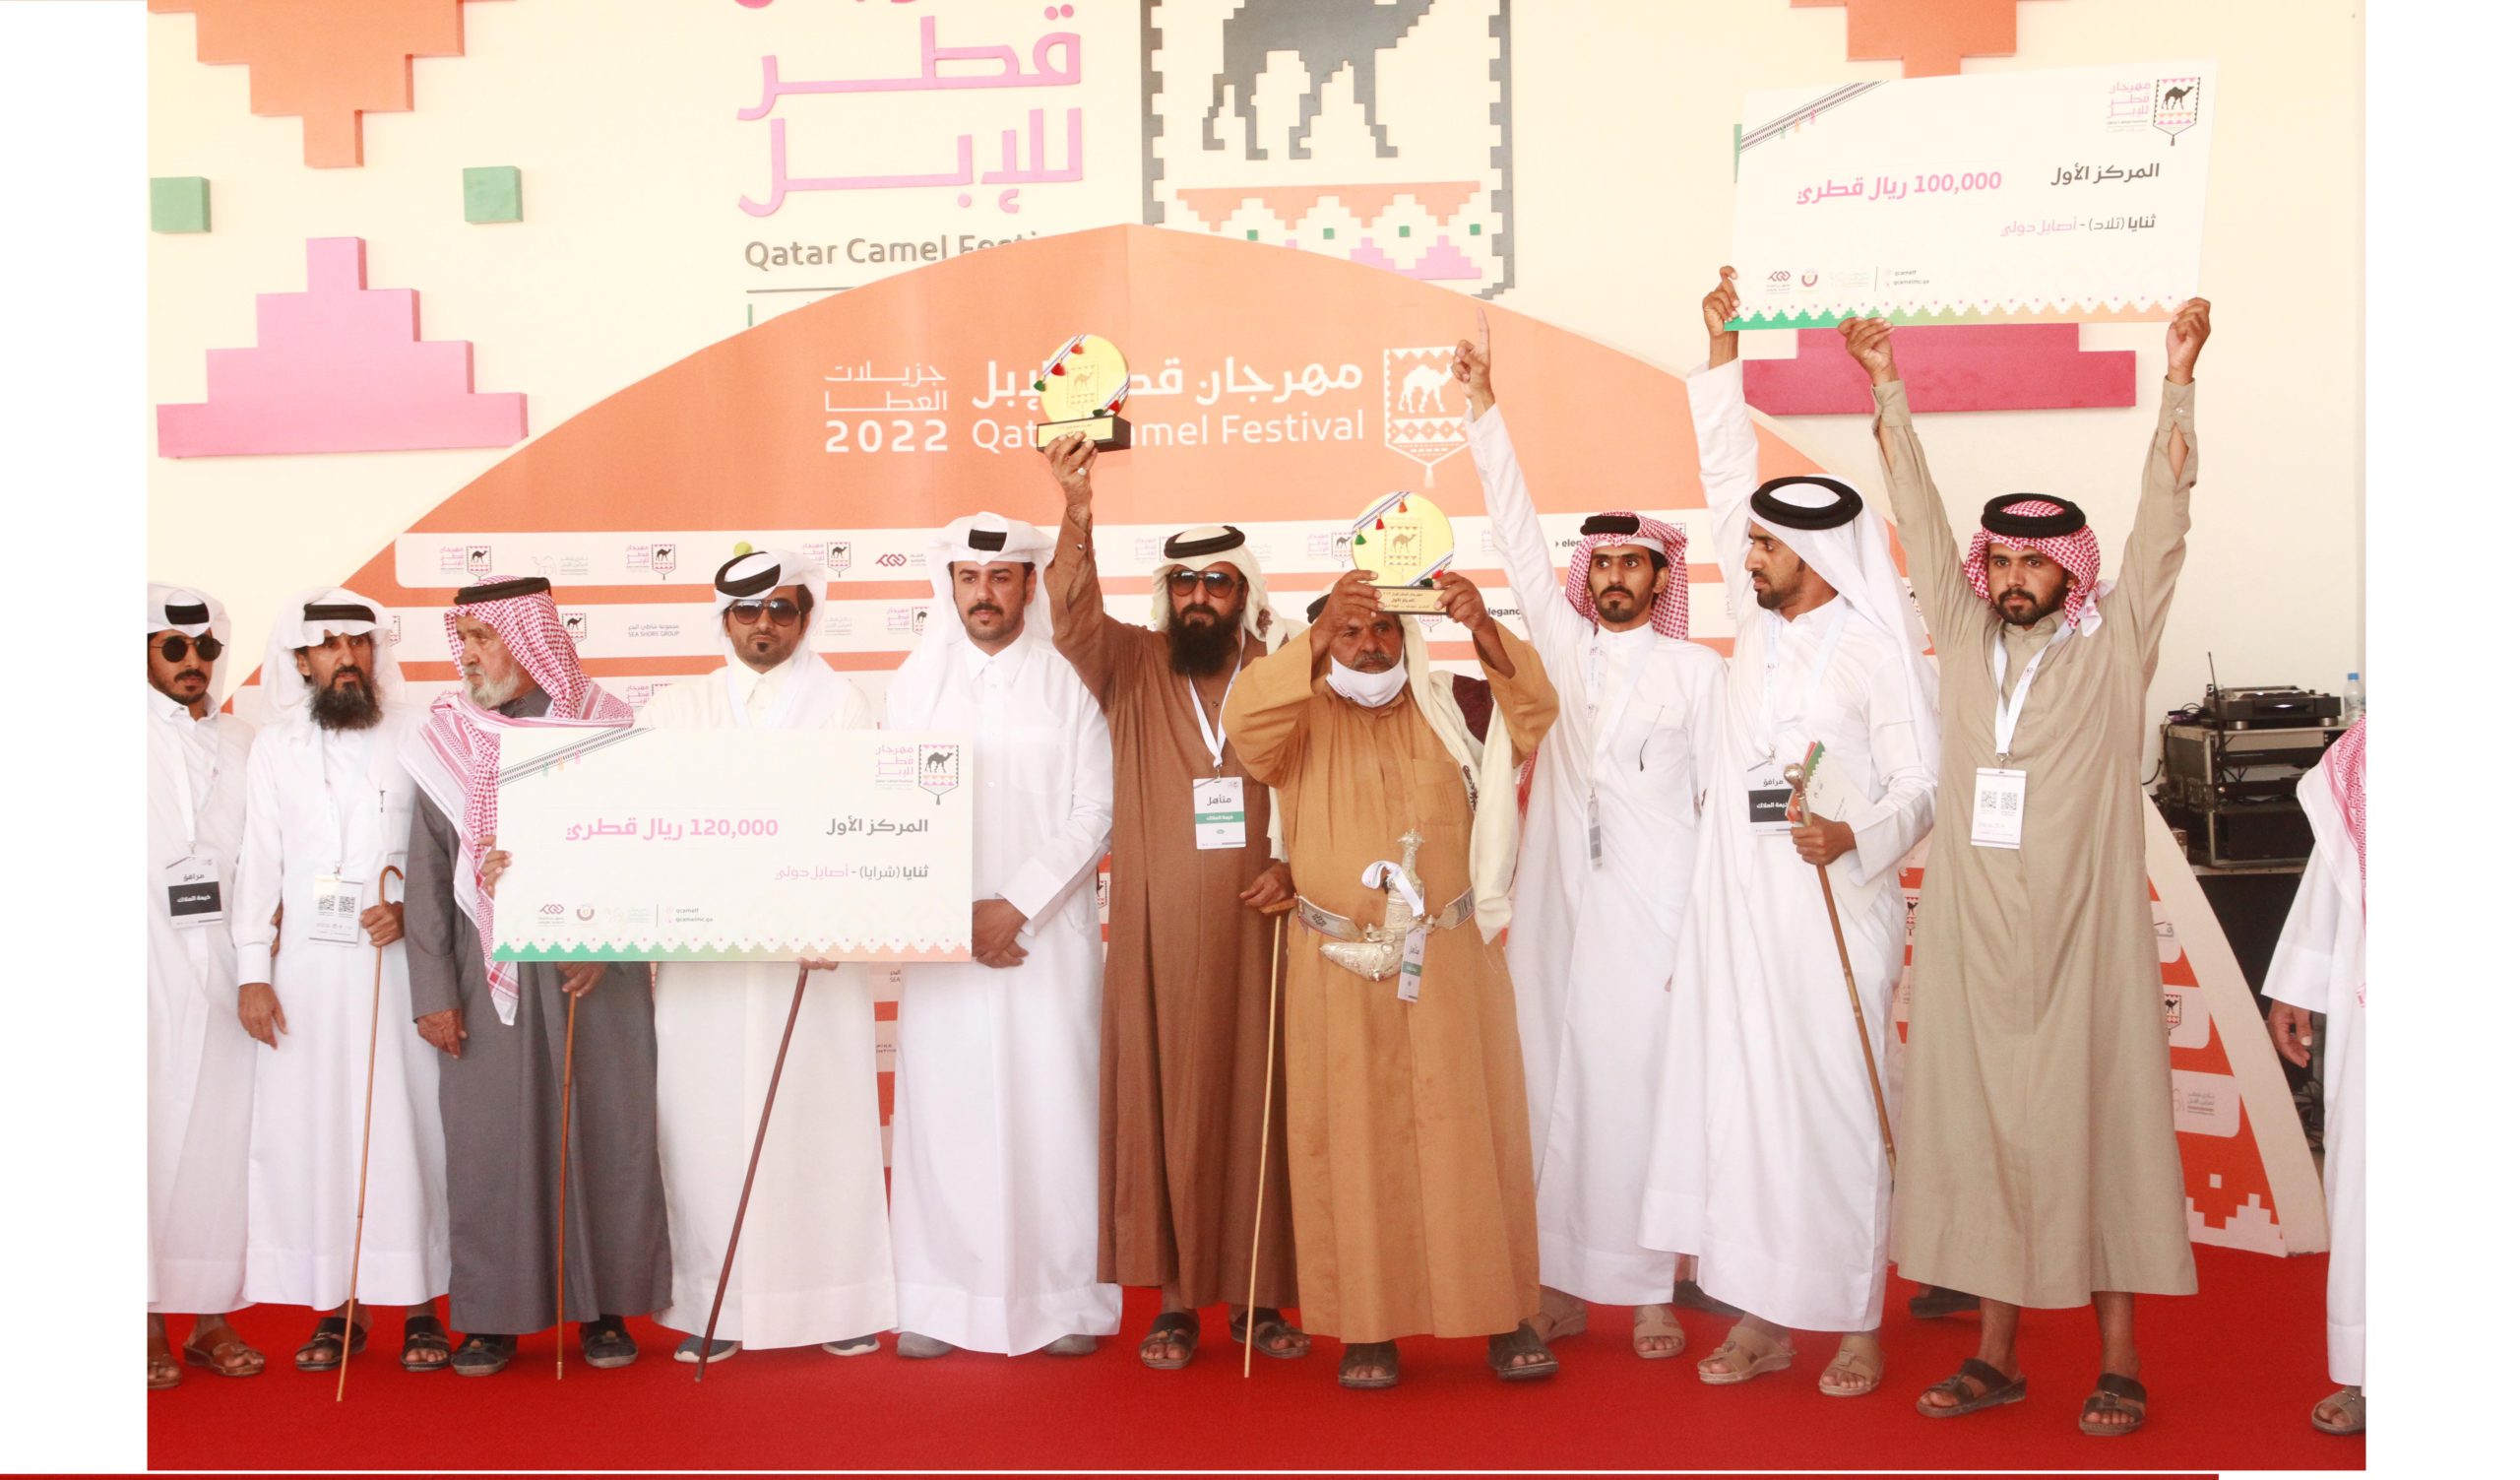 محمد القريصي: الفوز برمزين في مهرجان قطر للإبل إنجاز كبير